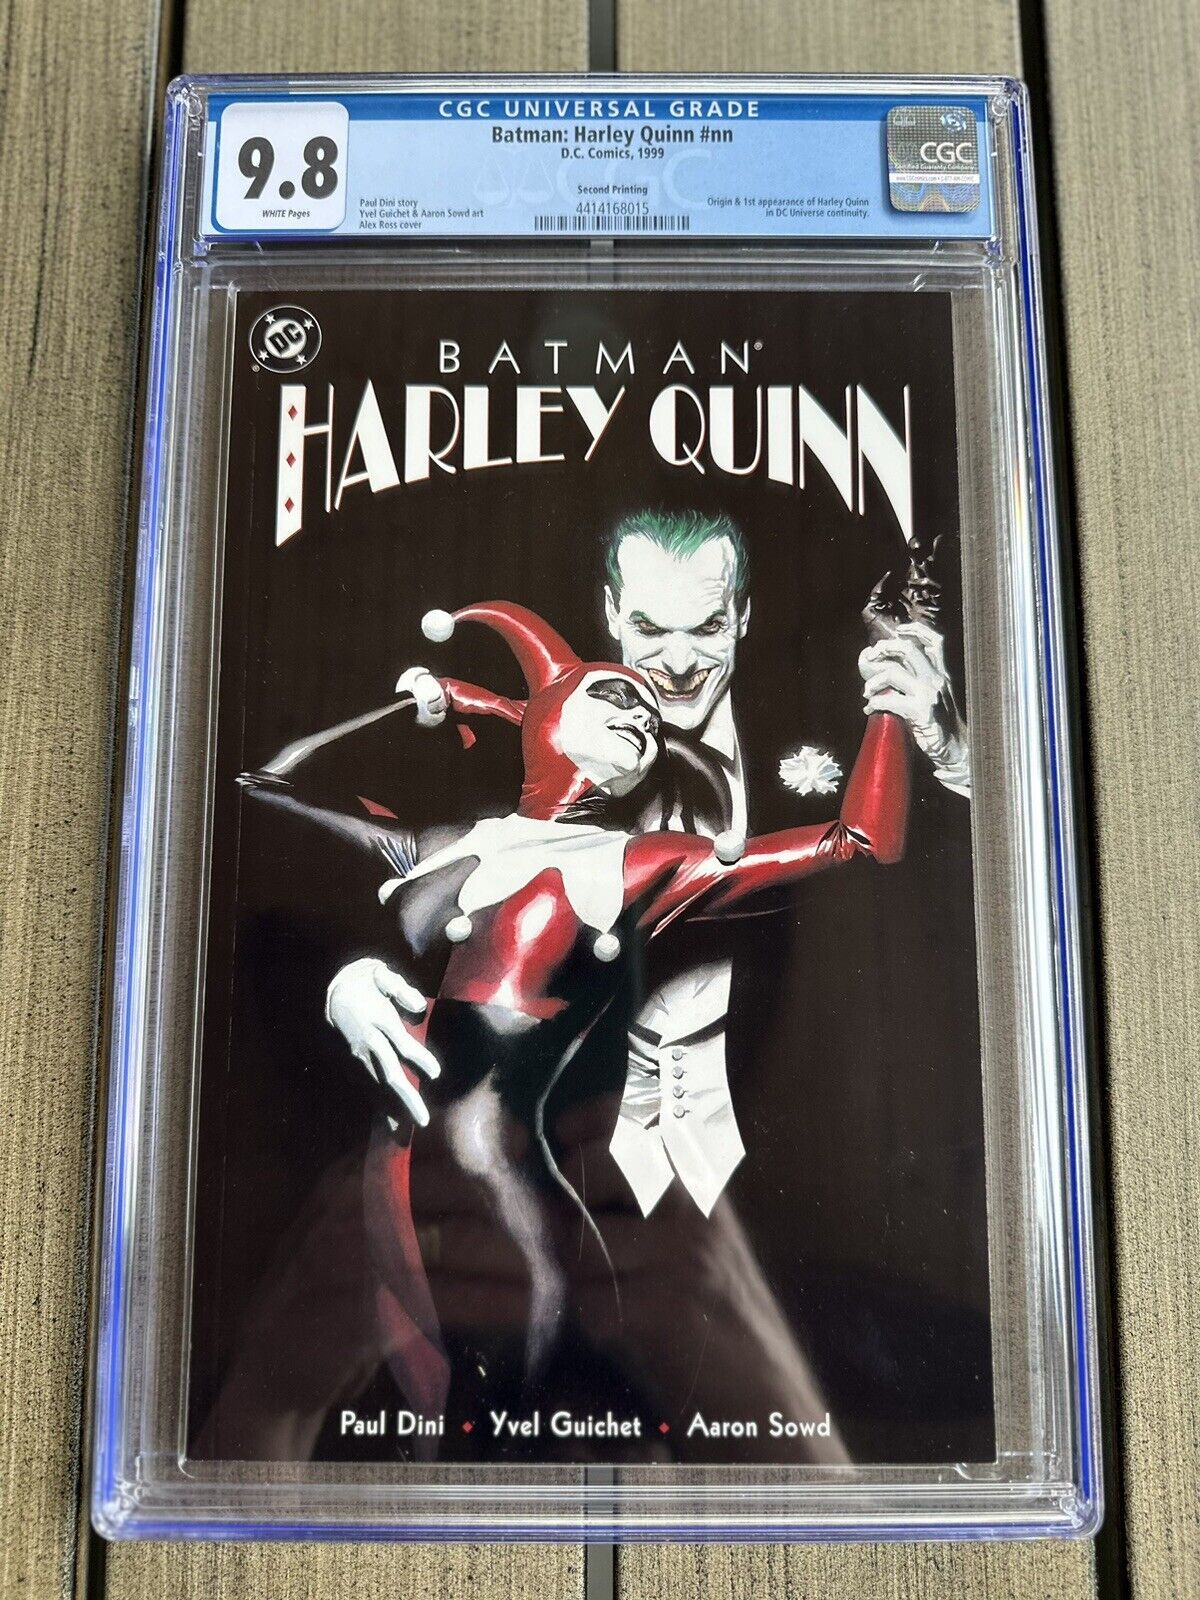 Batman Harley Quinn #1 CGC 9.8 (2nd Print) 🔑 1st App of Harley Quinn in DC Cont